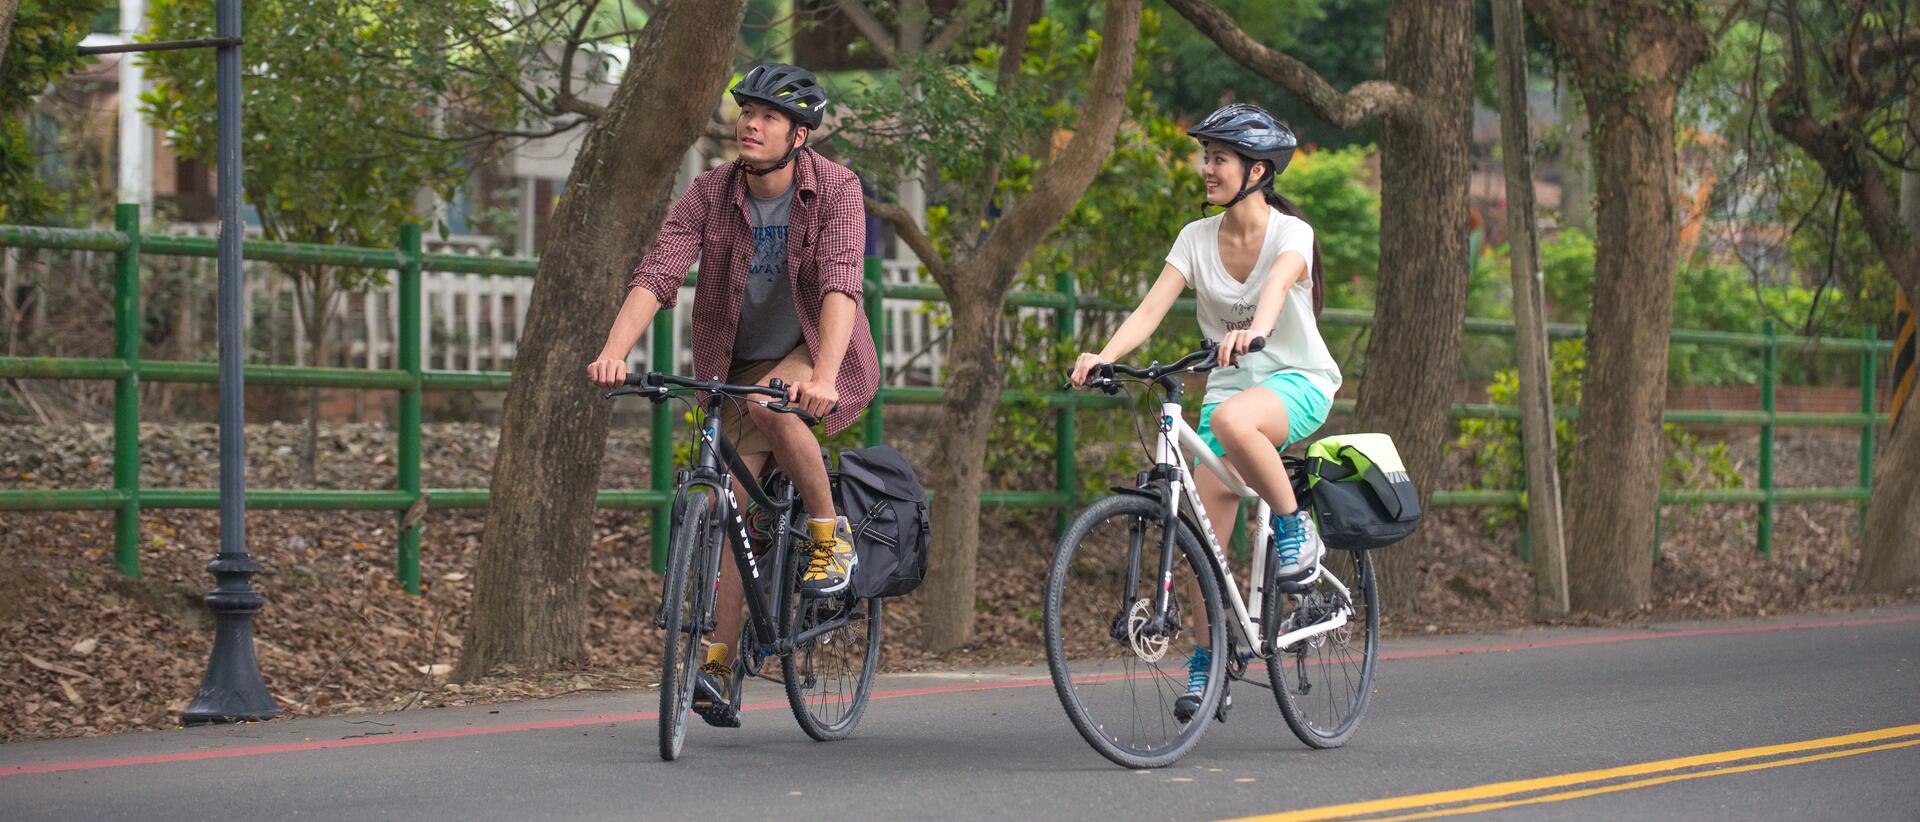 Kobieta i mężczyzna jadący w kaskach na rowerach przez miasto